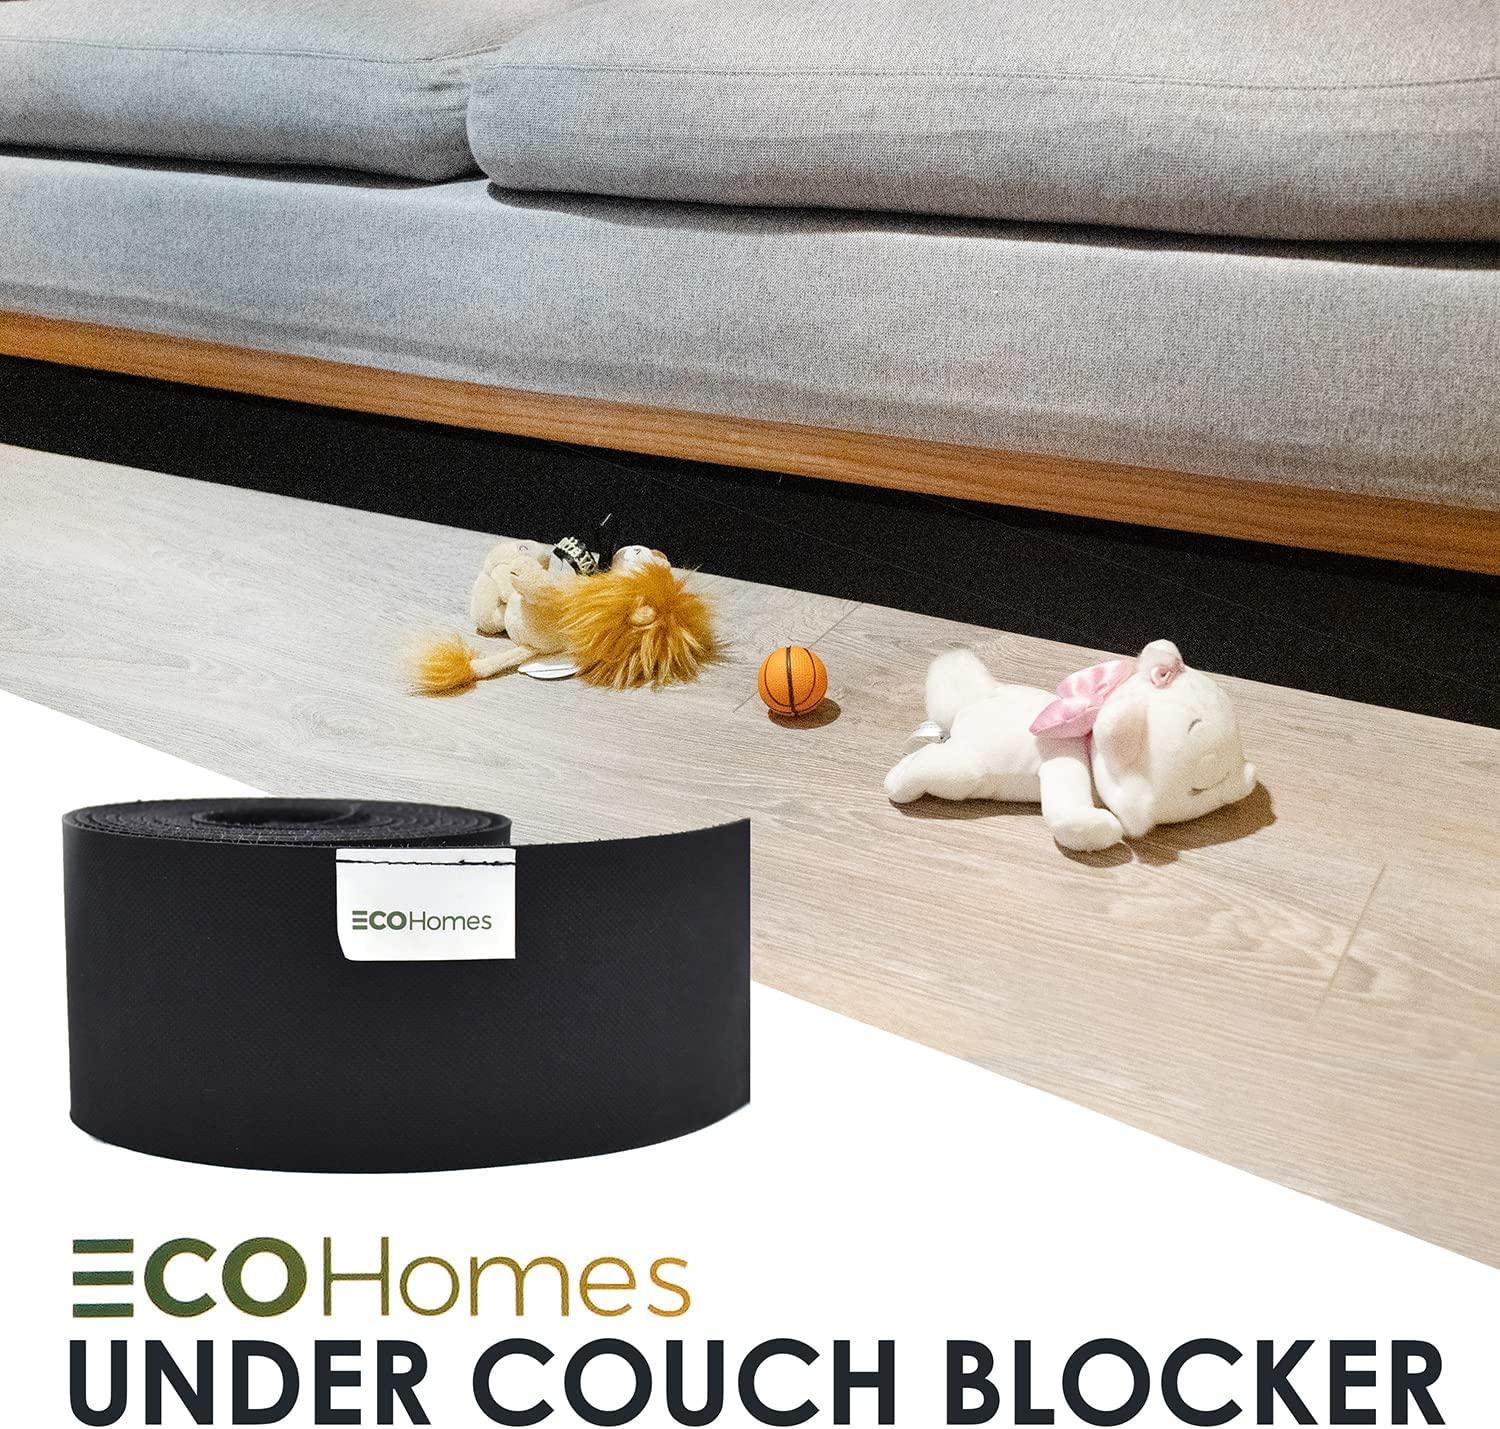  Under Couch Toy Blocker